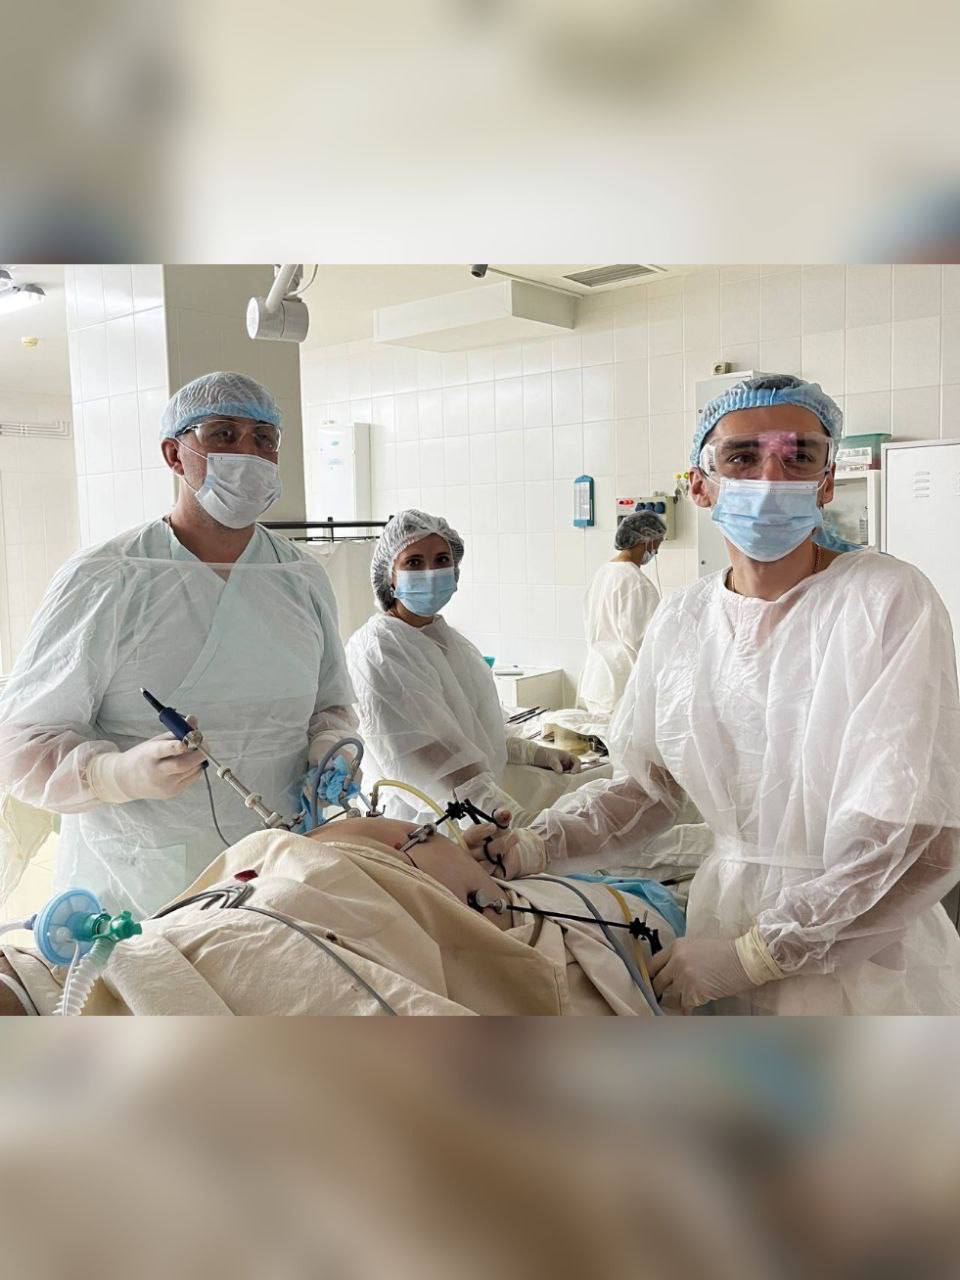 Кузбасские врачи извлекли из кишечника пациента вставную челюсть, которую он проглотил шесть лет назад